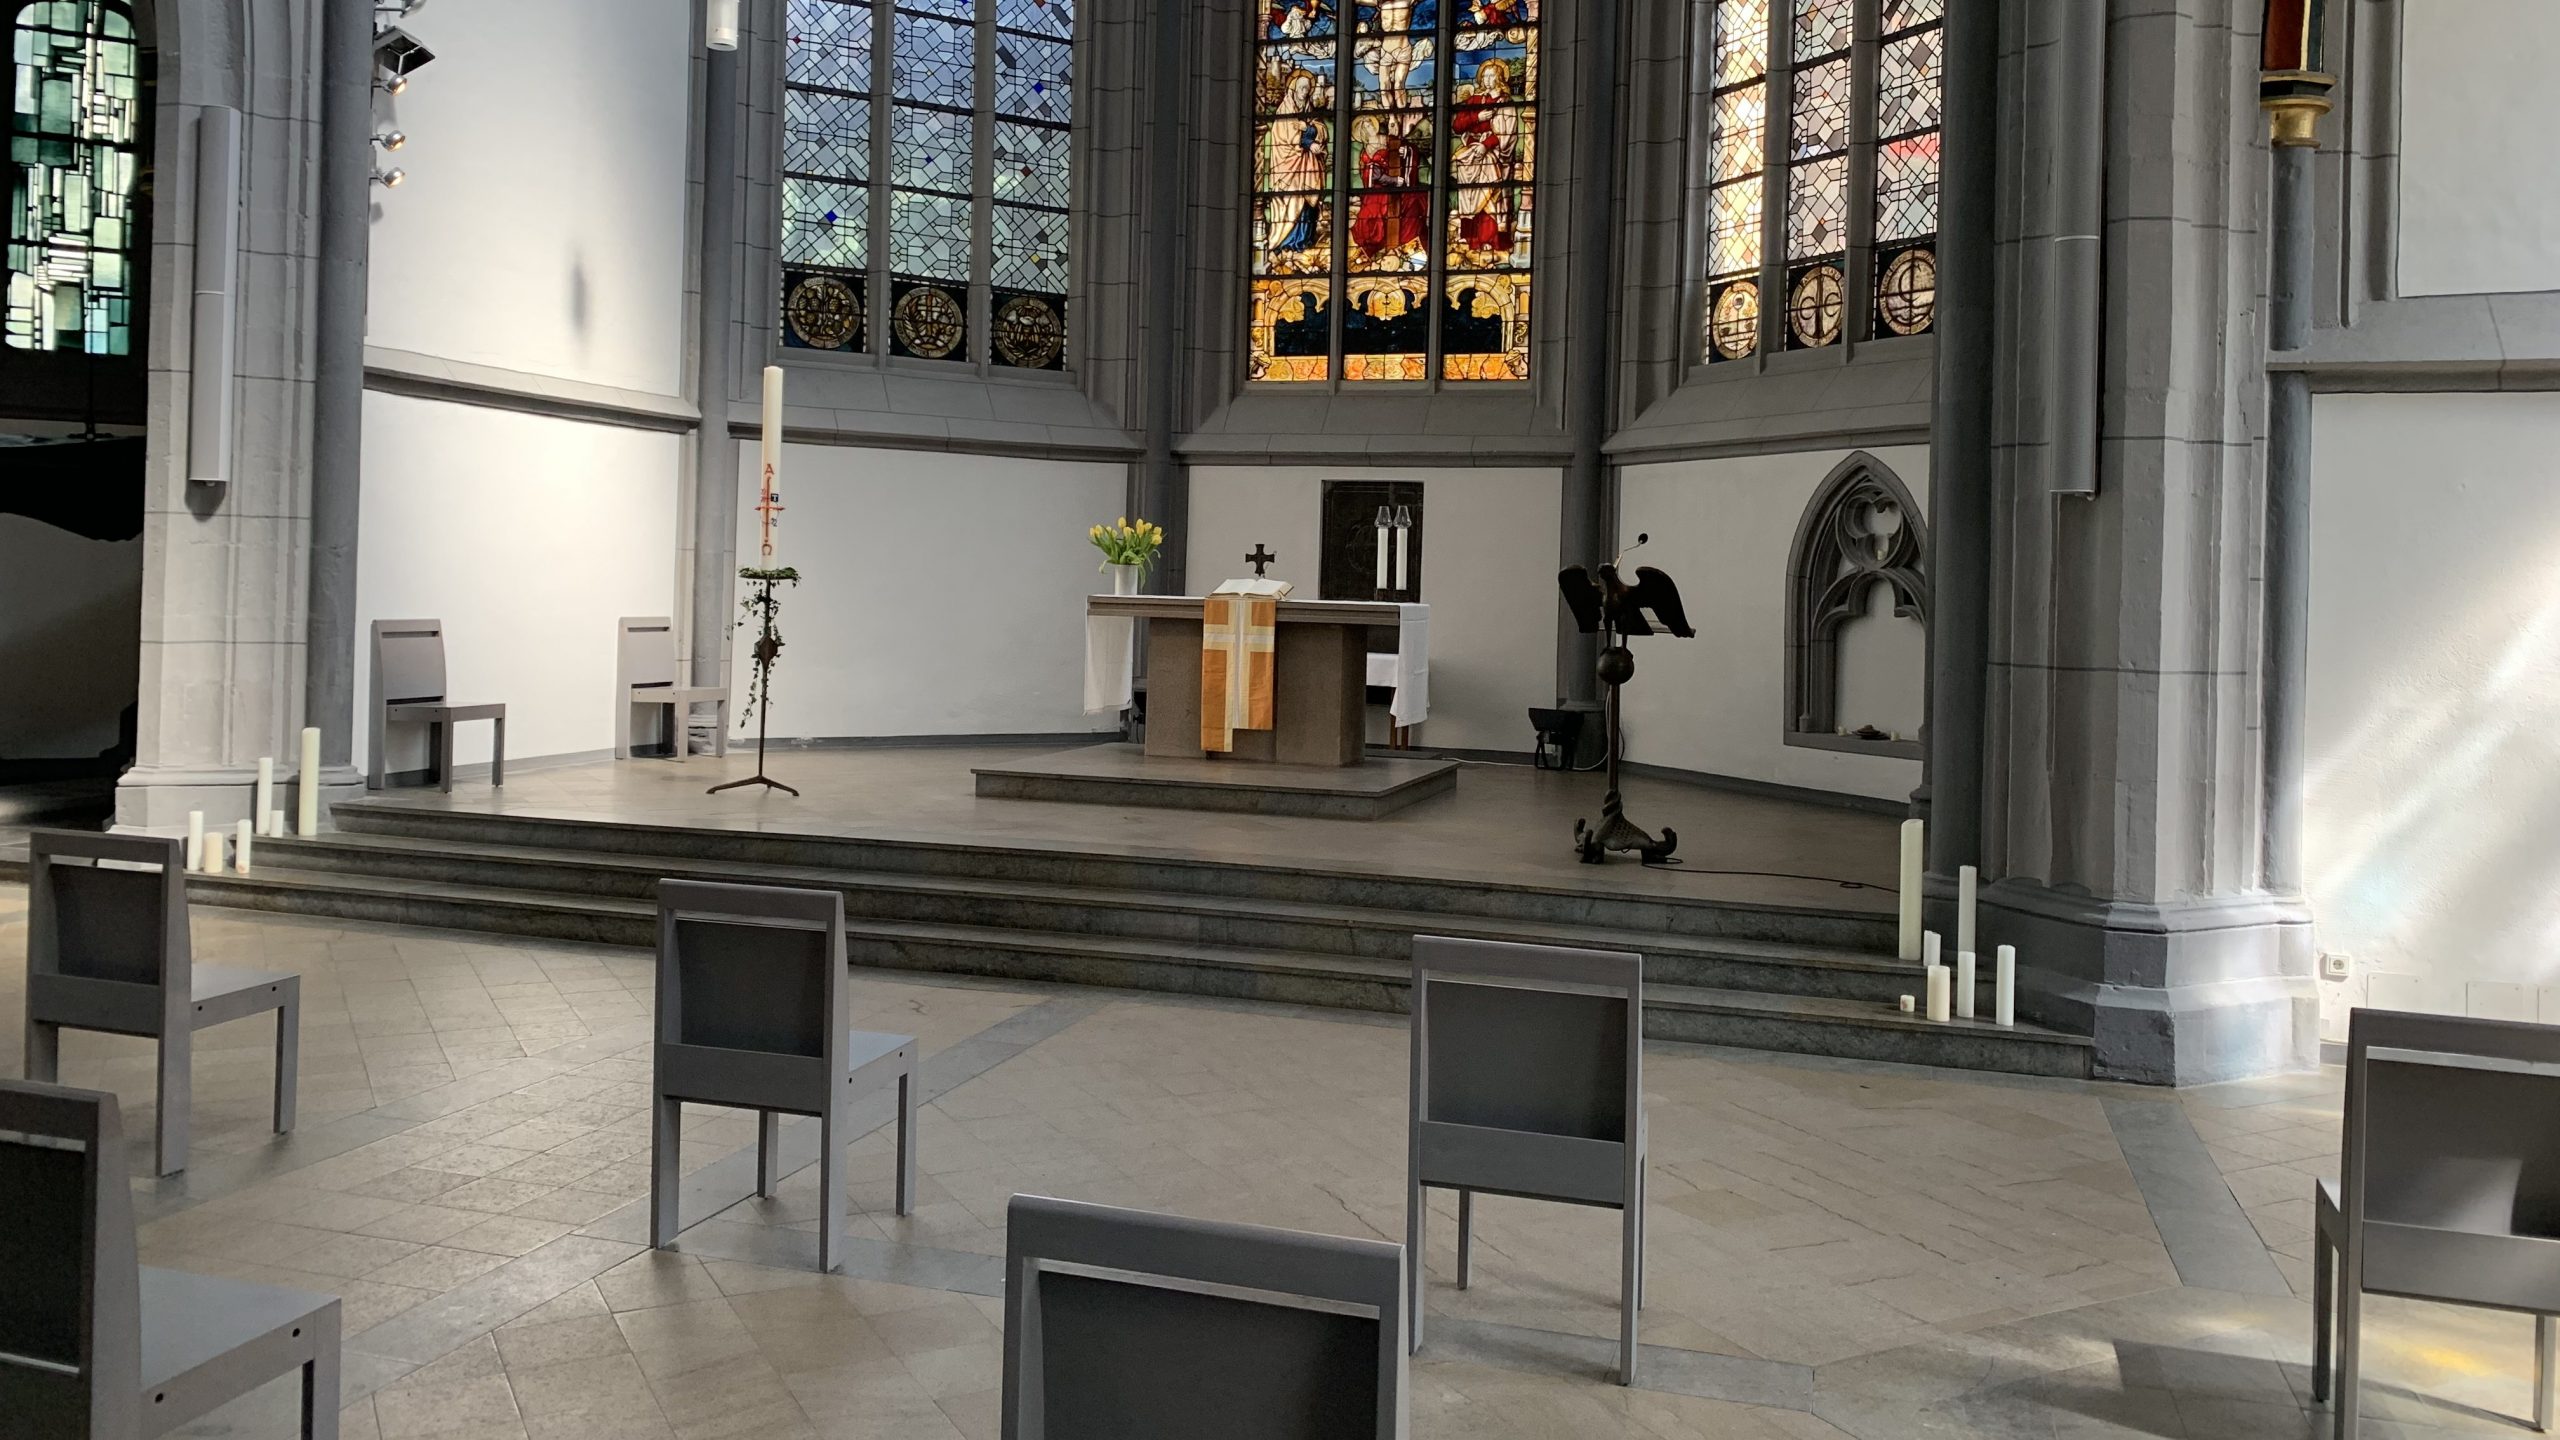 You are currently viewing Antoniterkirche in der Kölner Innenstadt startet am 3. Mai wieder mit Gottesdiensten – Anmeldung erforderlich